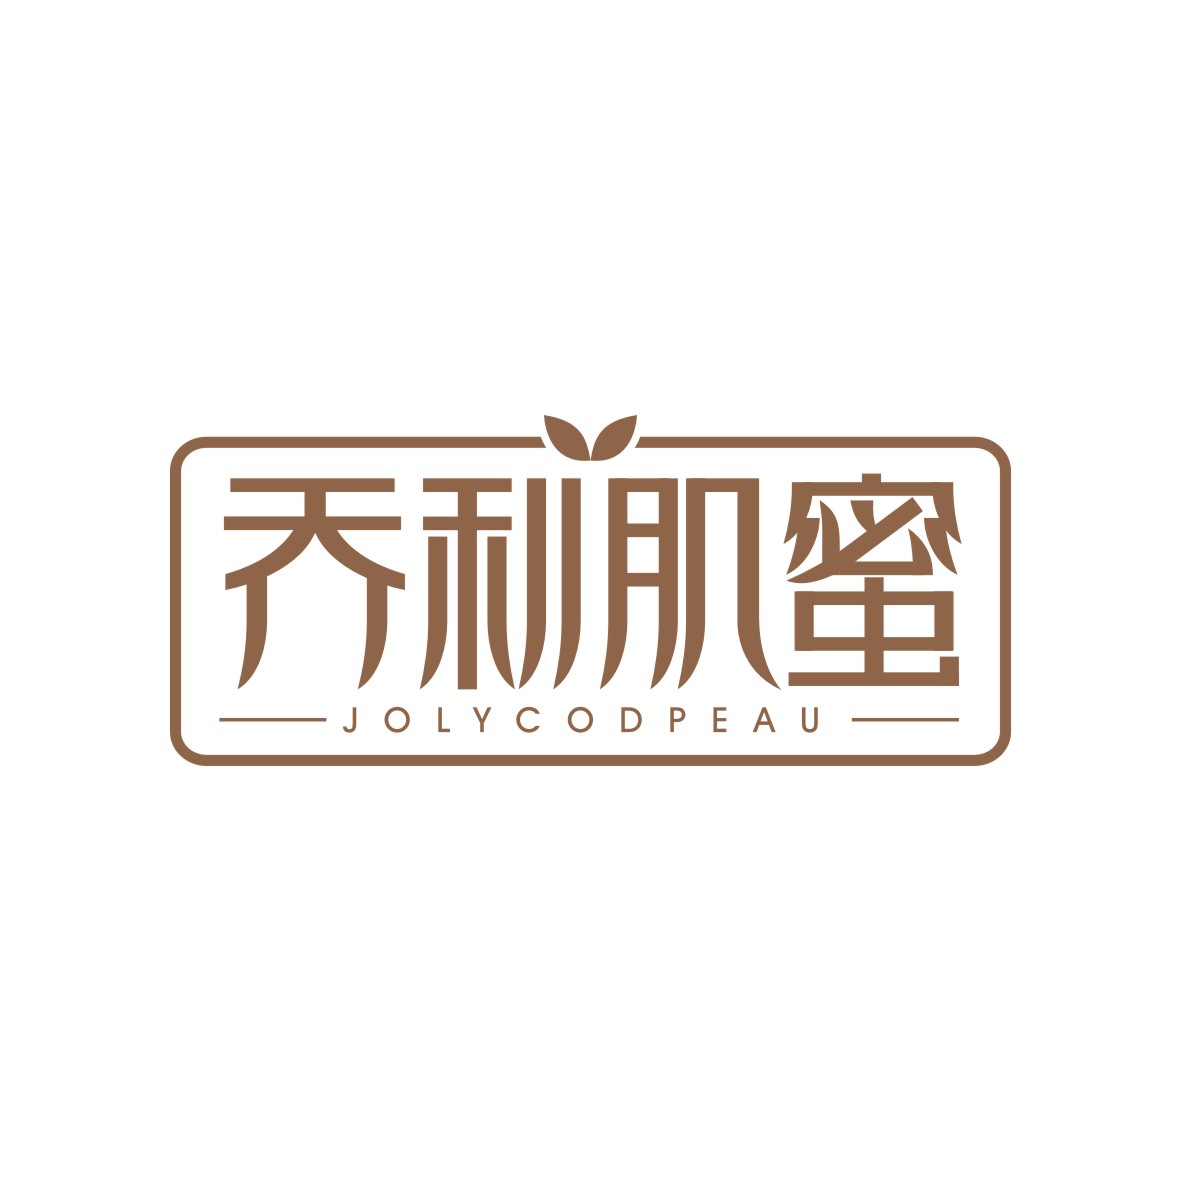 广州品辰文化传播有限公司商标乔利肌蜜 JOLYCODPEAU（03类）商标买卖平台报价，上哪个平台最省钱？